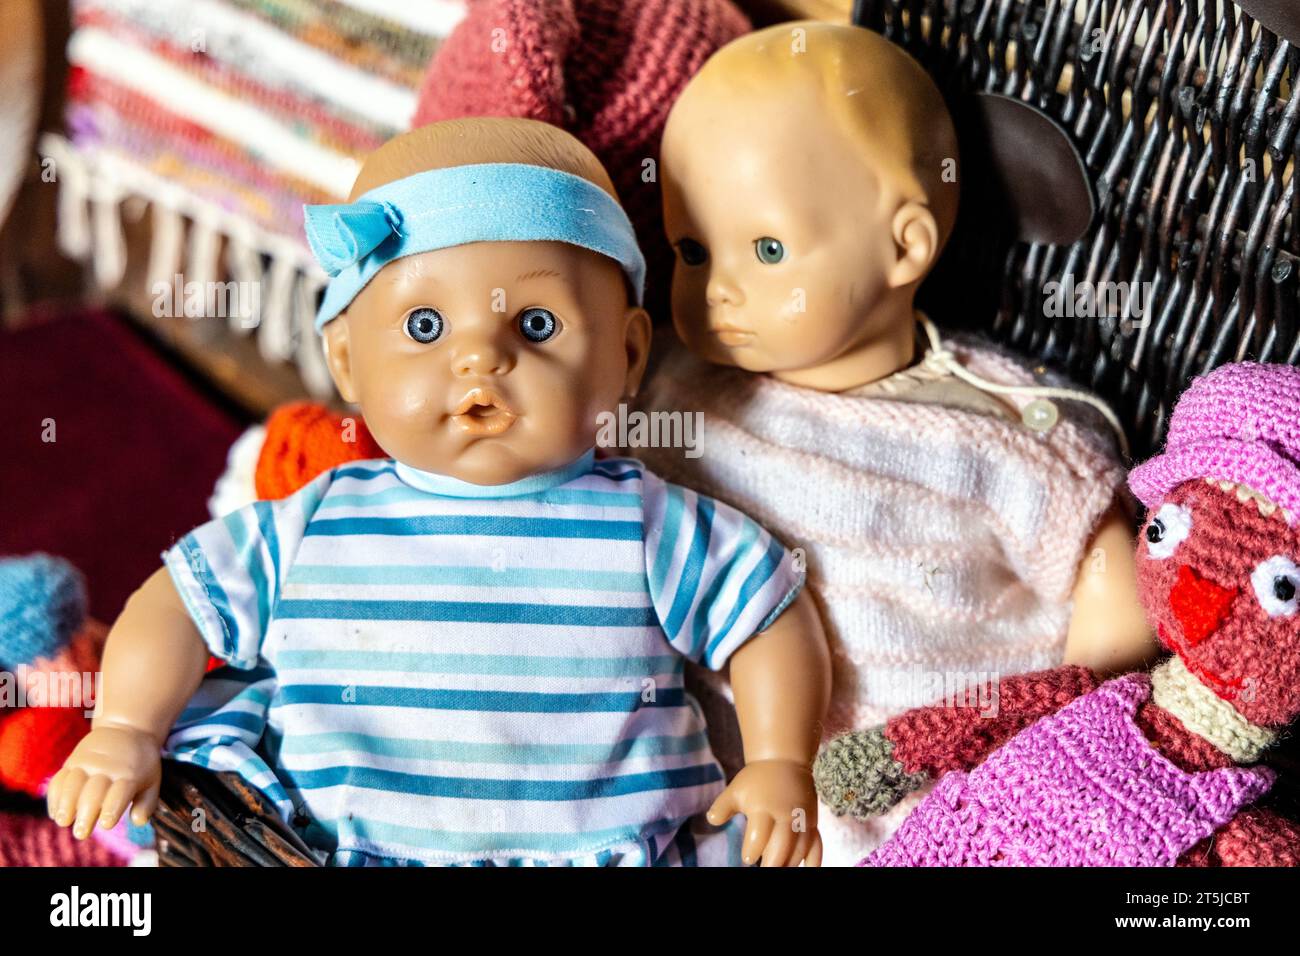 Babypuppen in einem Spielzeugkorb Stockfoto